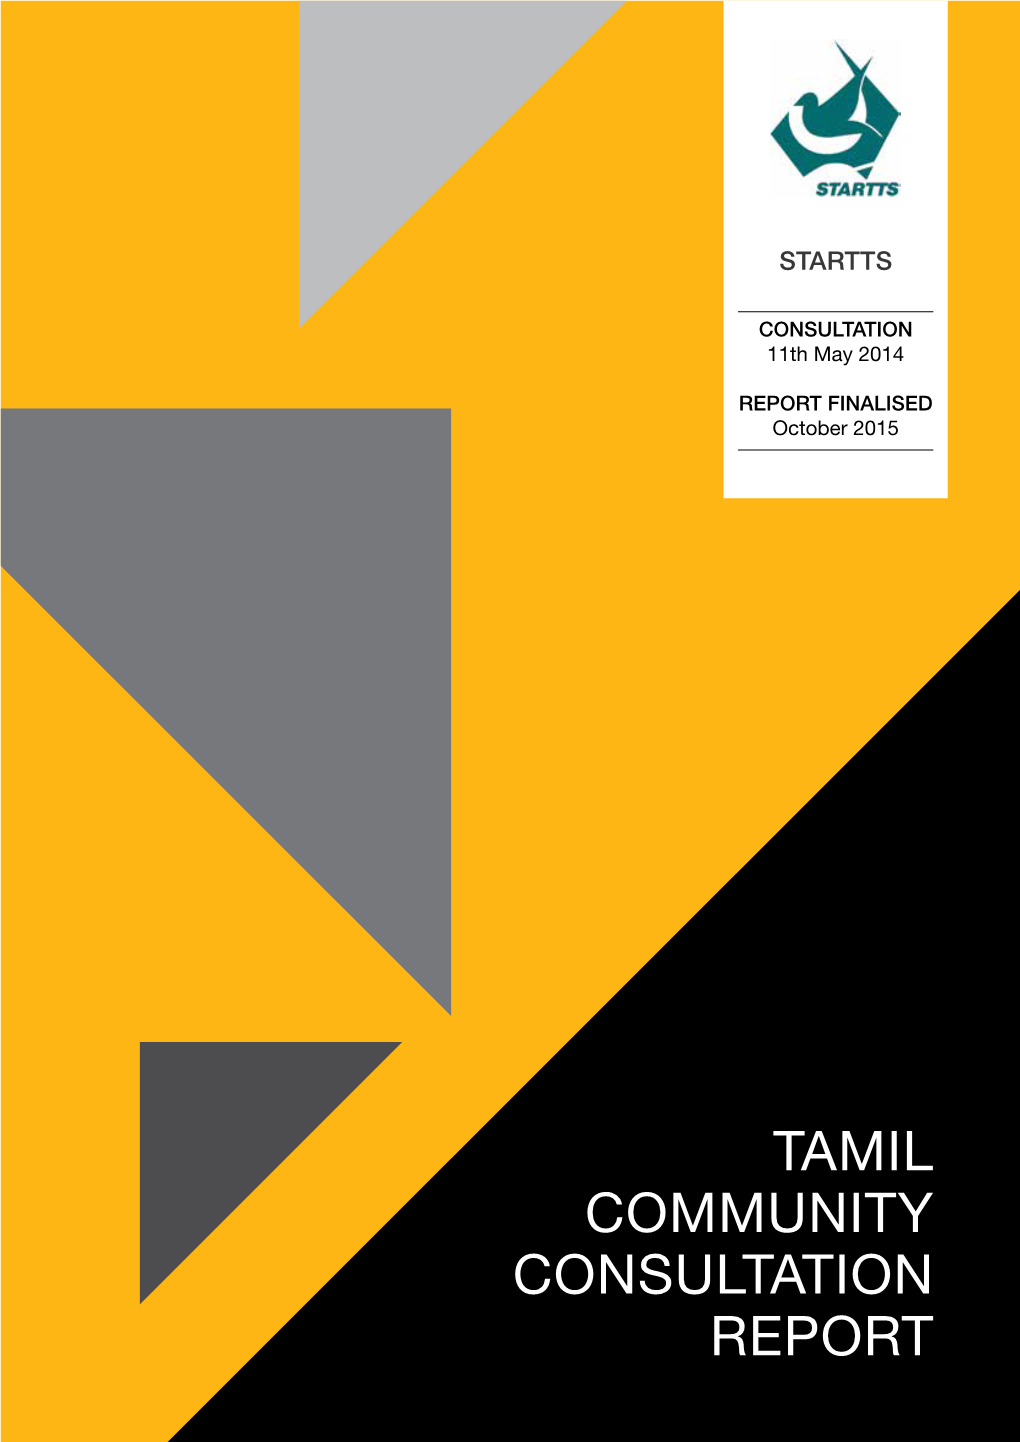 Tamil Community Consultation Report